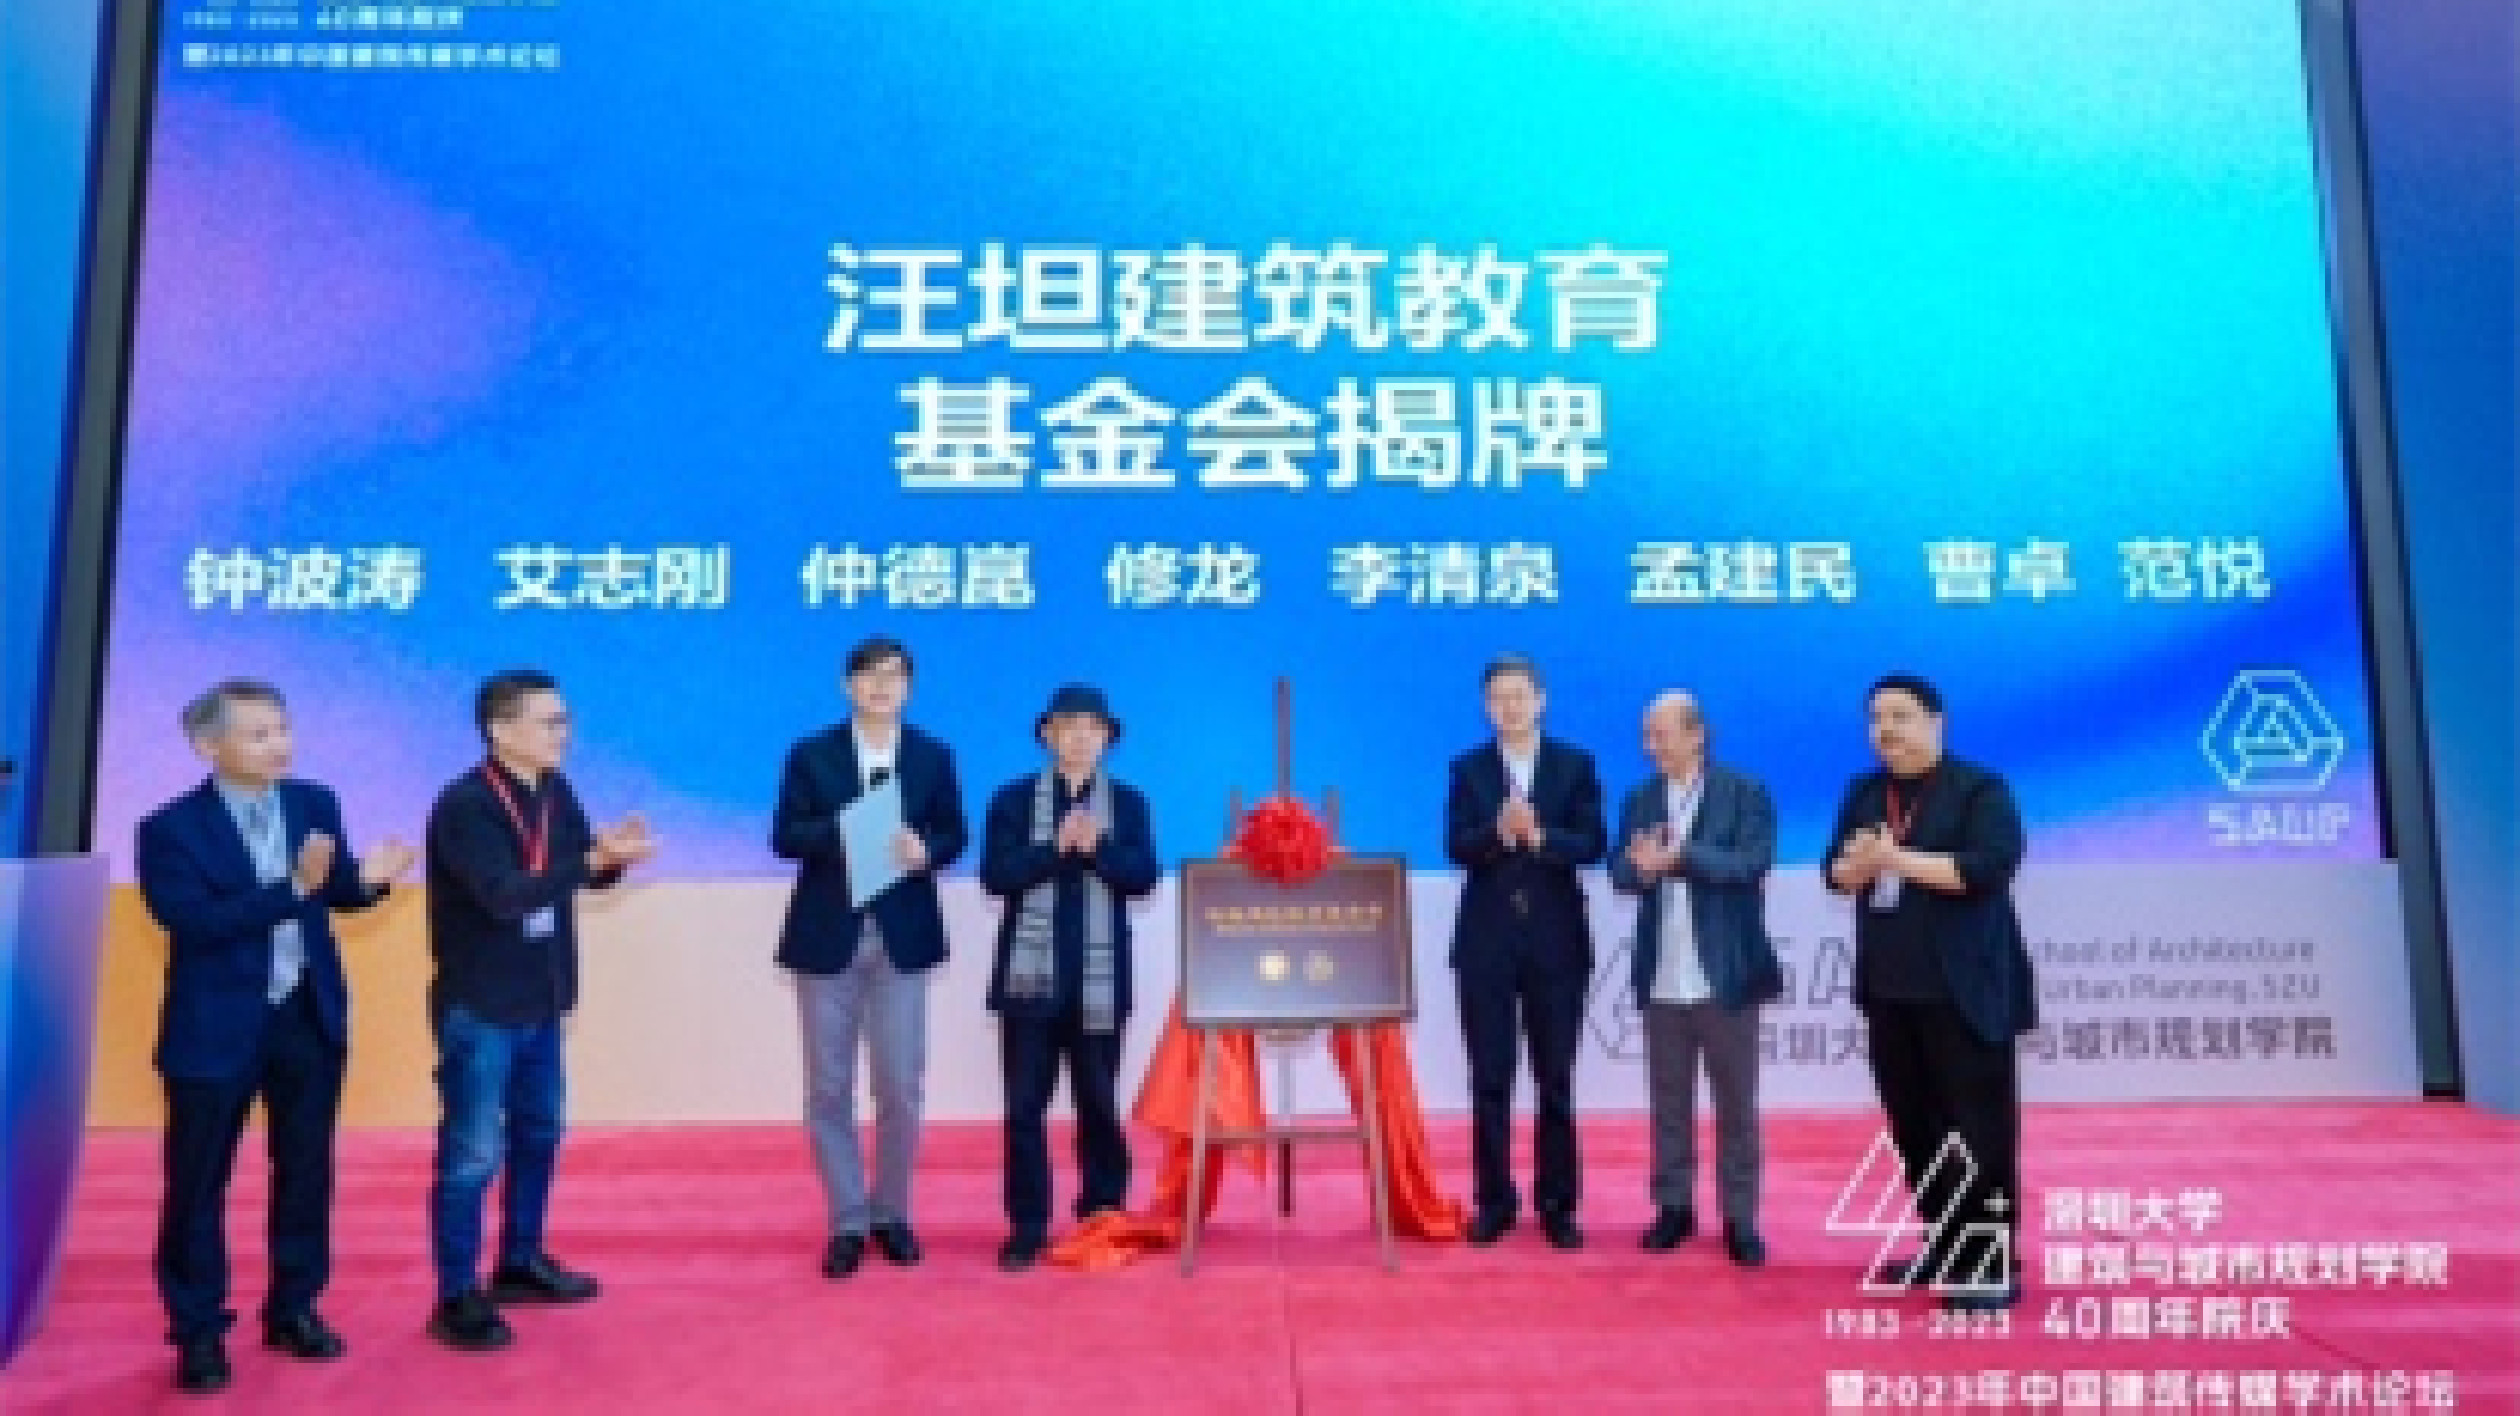 深圳大學建築與城市規劃學院舉行40周年院慶大會  汪坦建築教育基金會揭牌